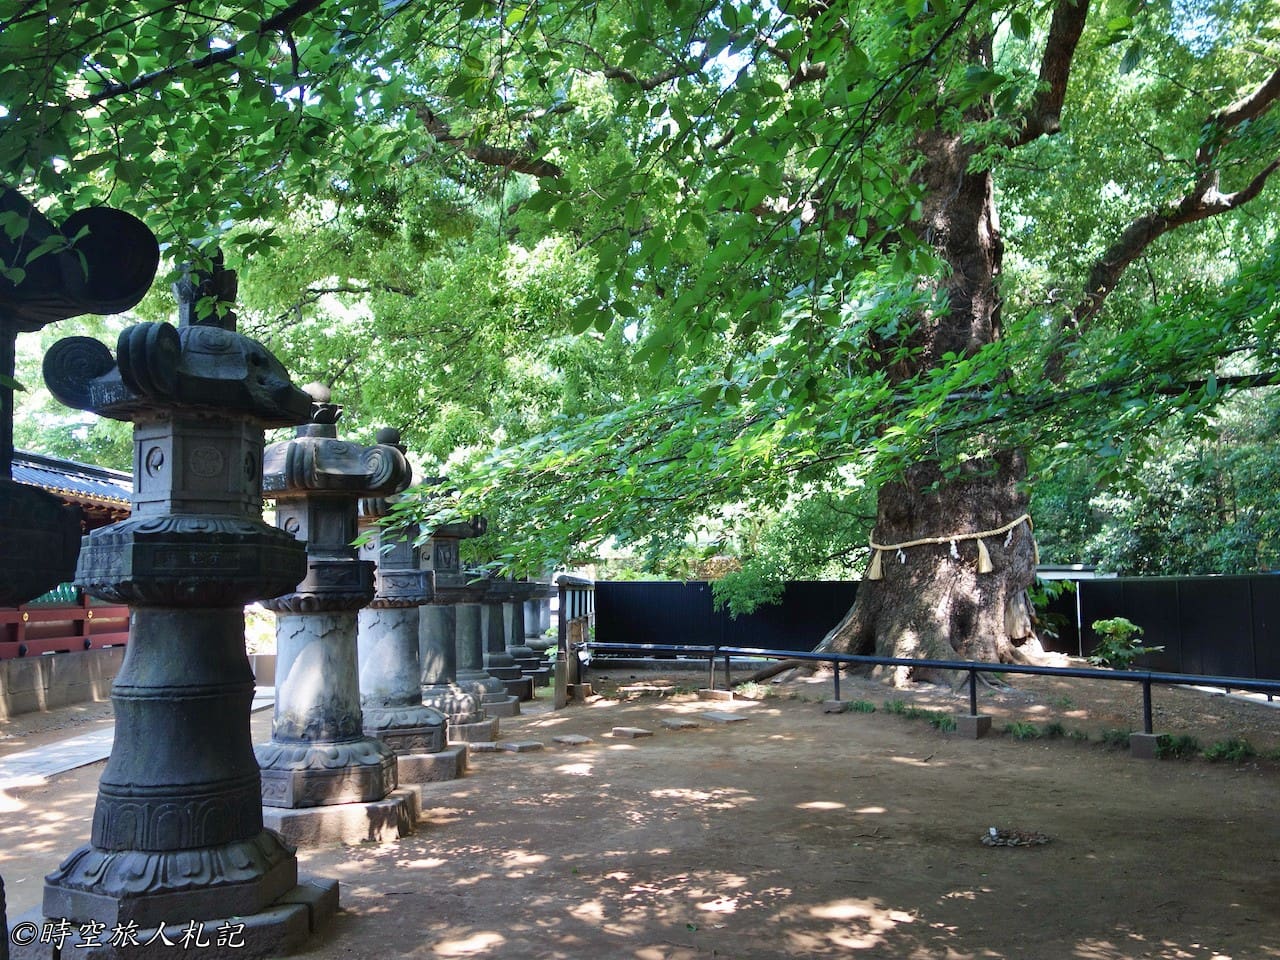 上野公園,上野東照宮,花園稻荷神社,五重塔,不忍池 3